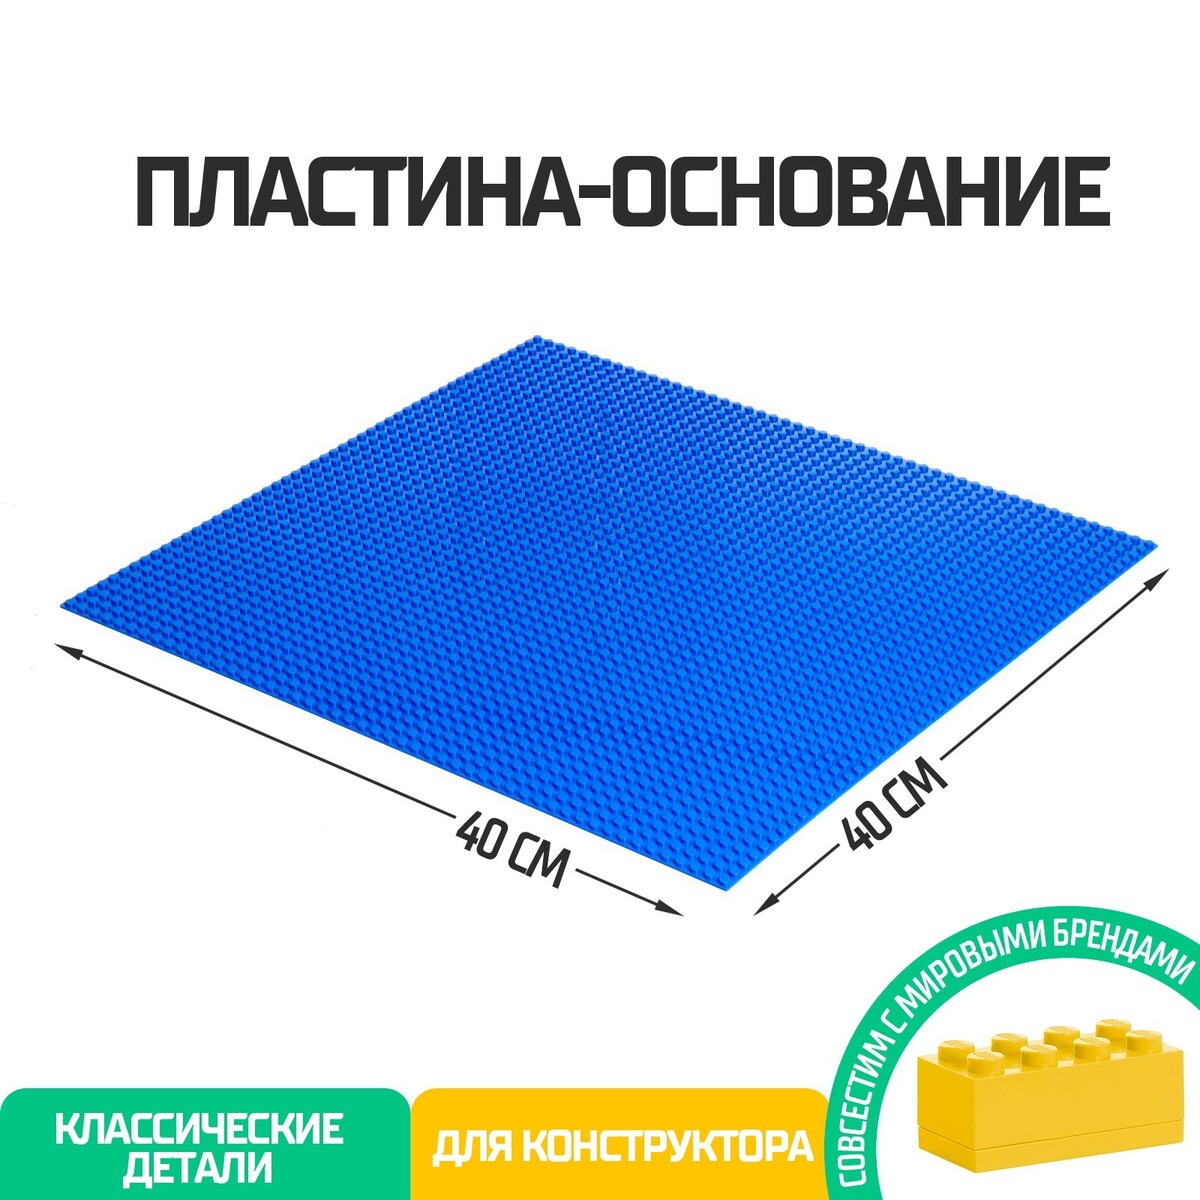 Пластина-основание для конструктора, 40 × 40 см, цвет синий пластина основание для конструктора 25 5 х 12 5 см зеленый